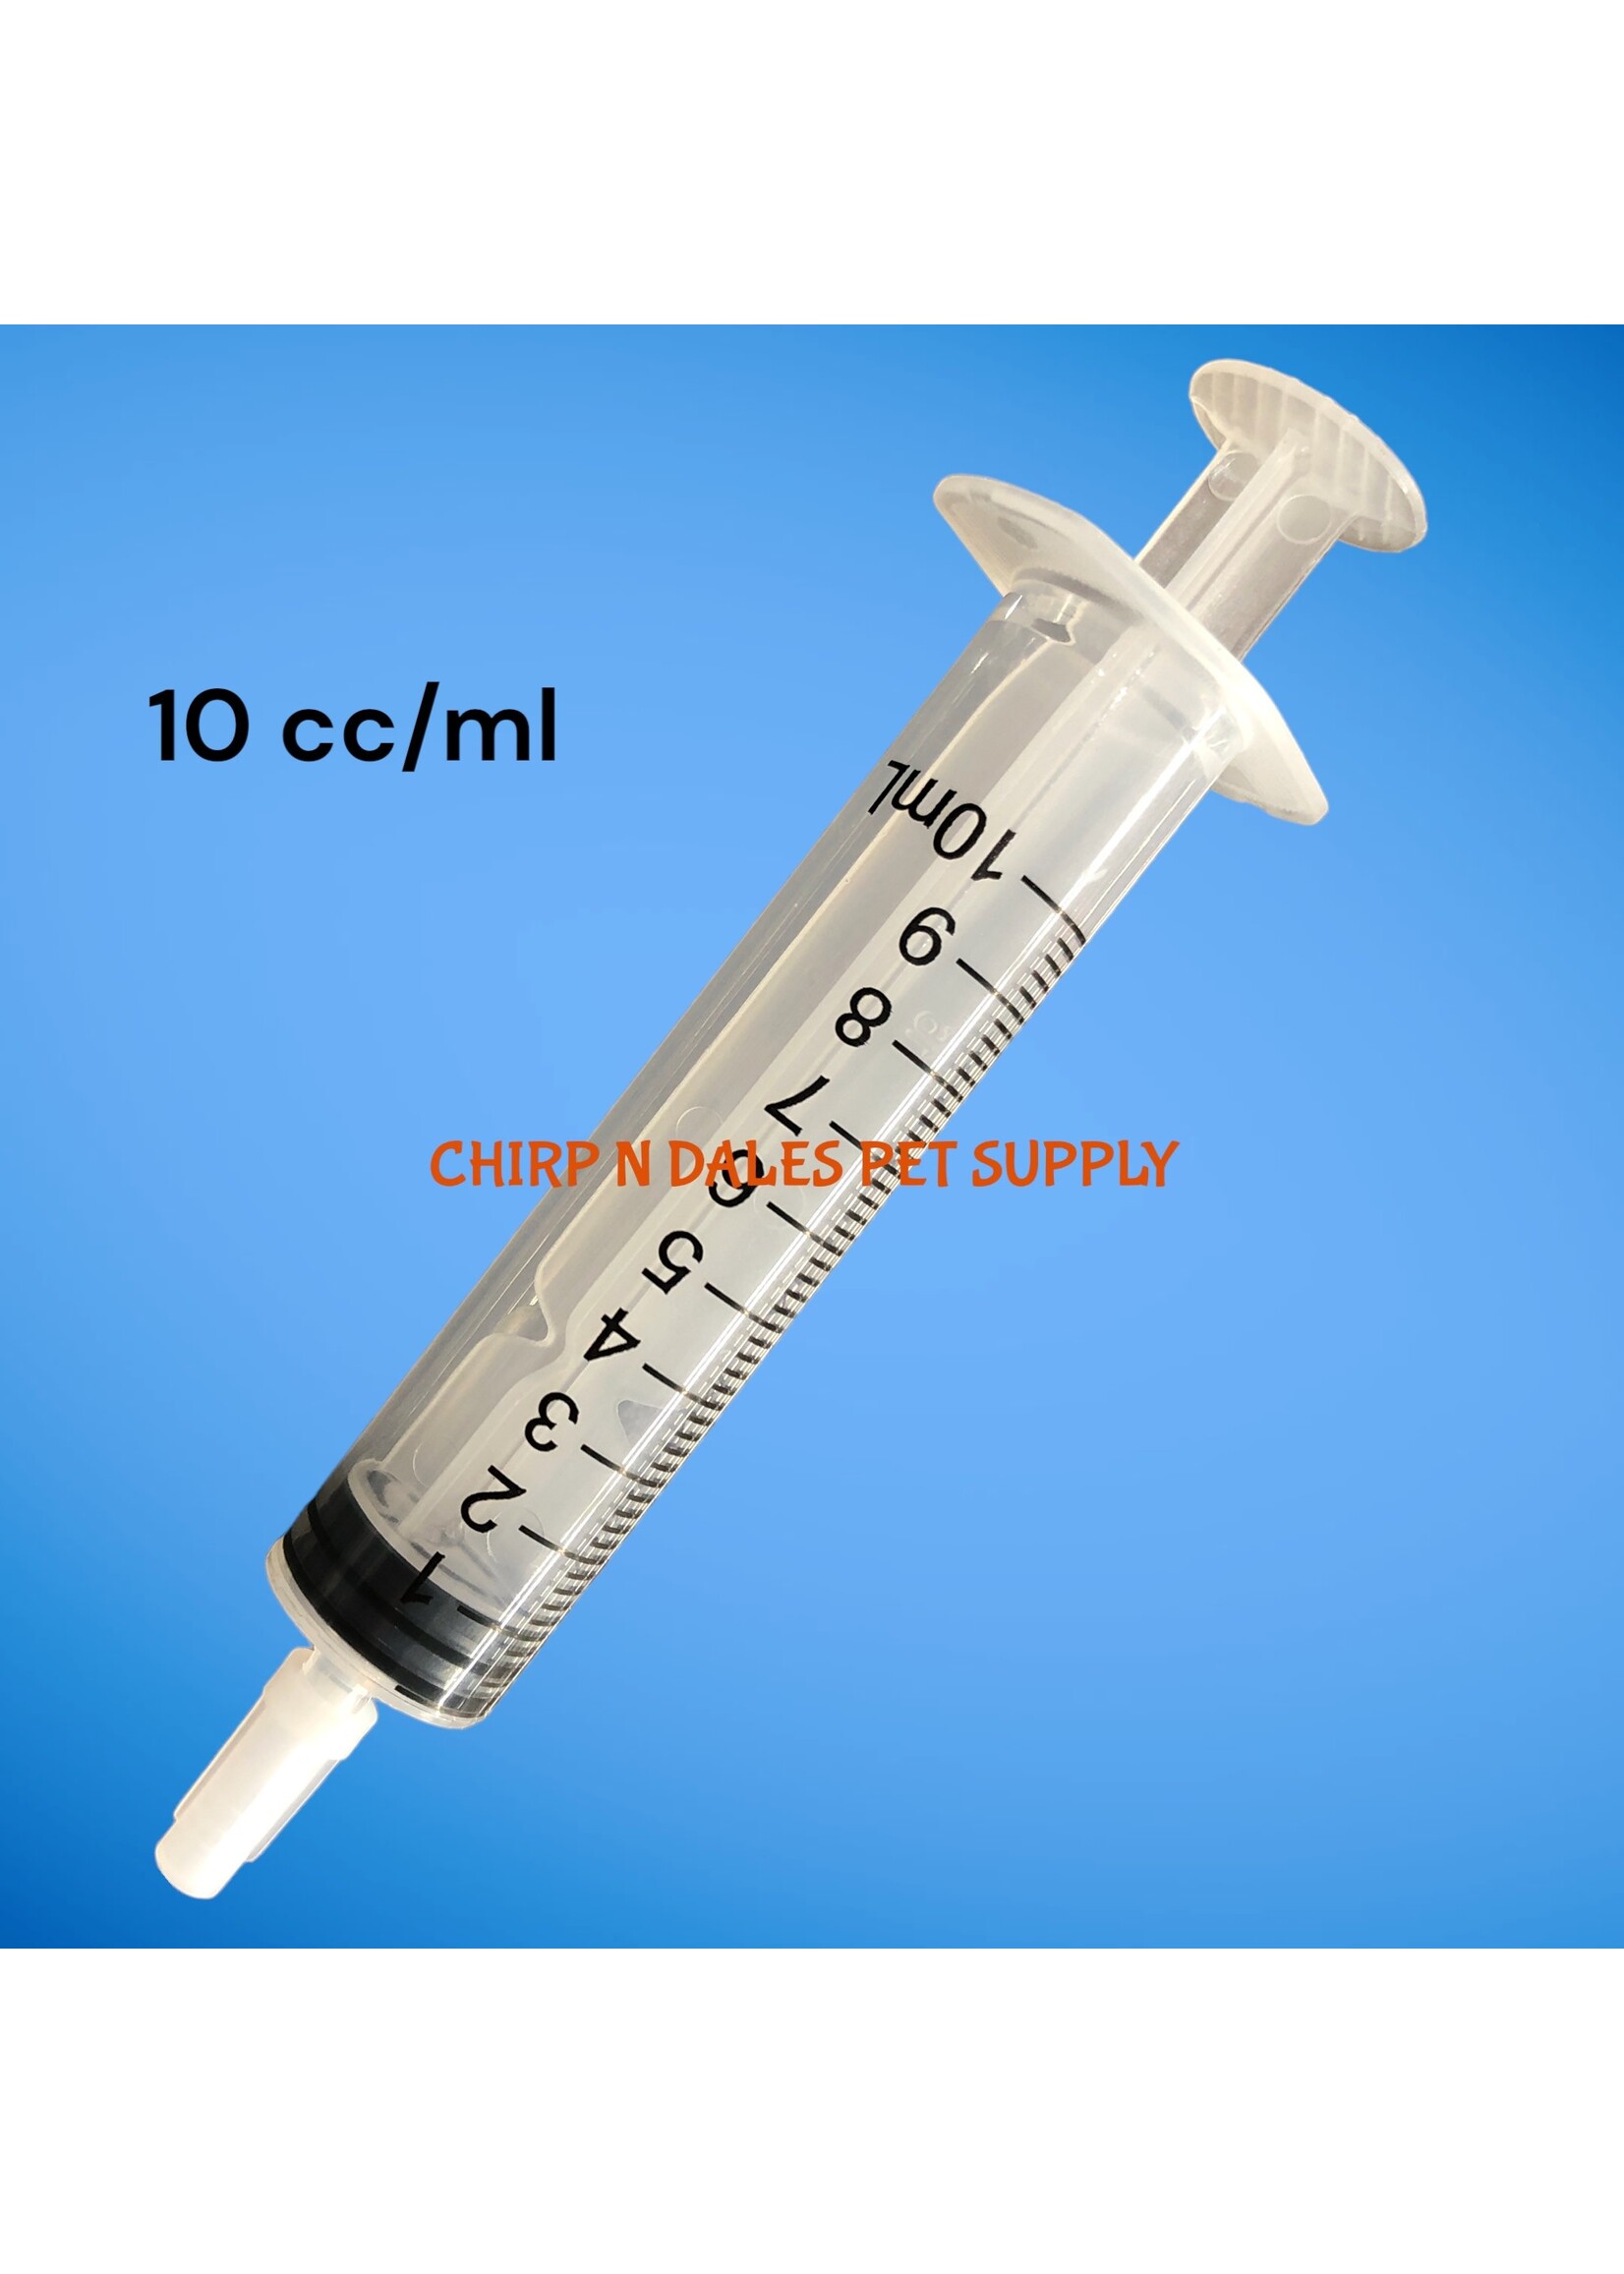 Syringe 10 cc/ml (1 unit)